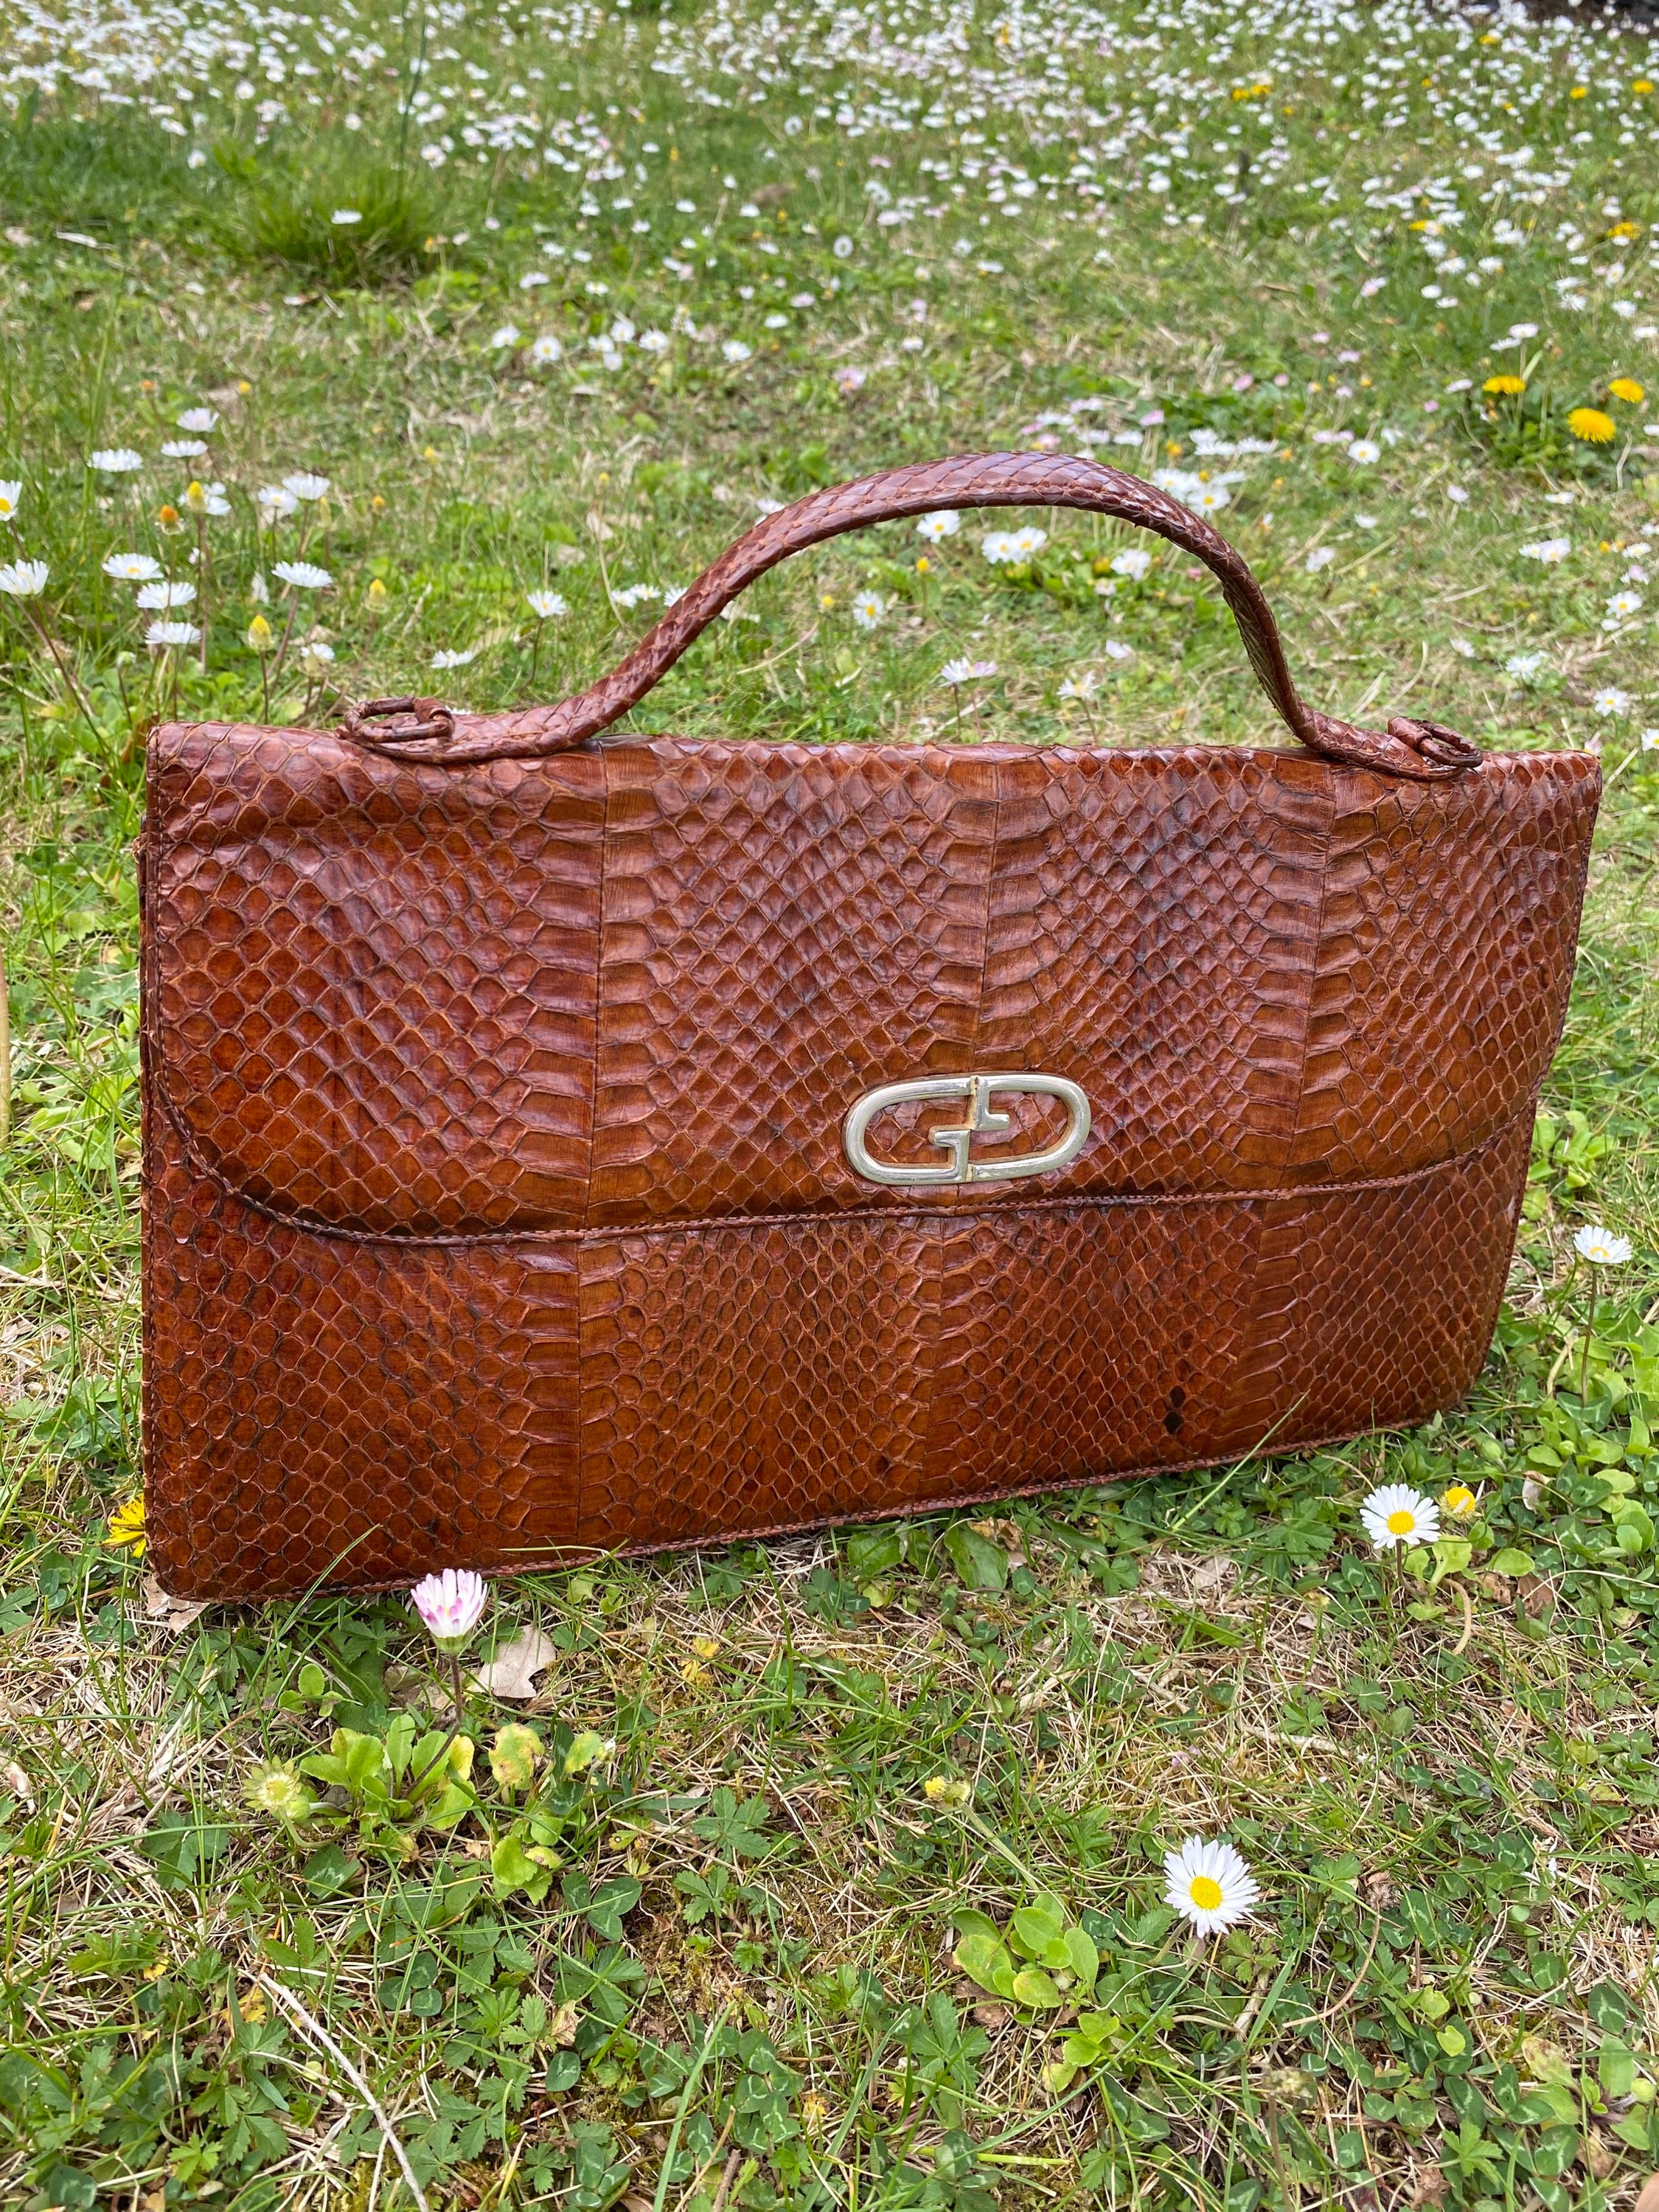 FENDI Vintage Zucca Tote Bag - A Retro Tale